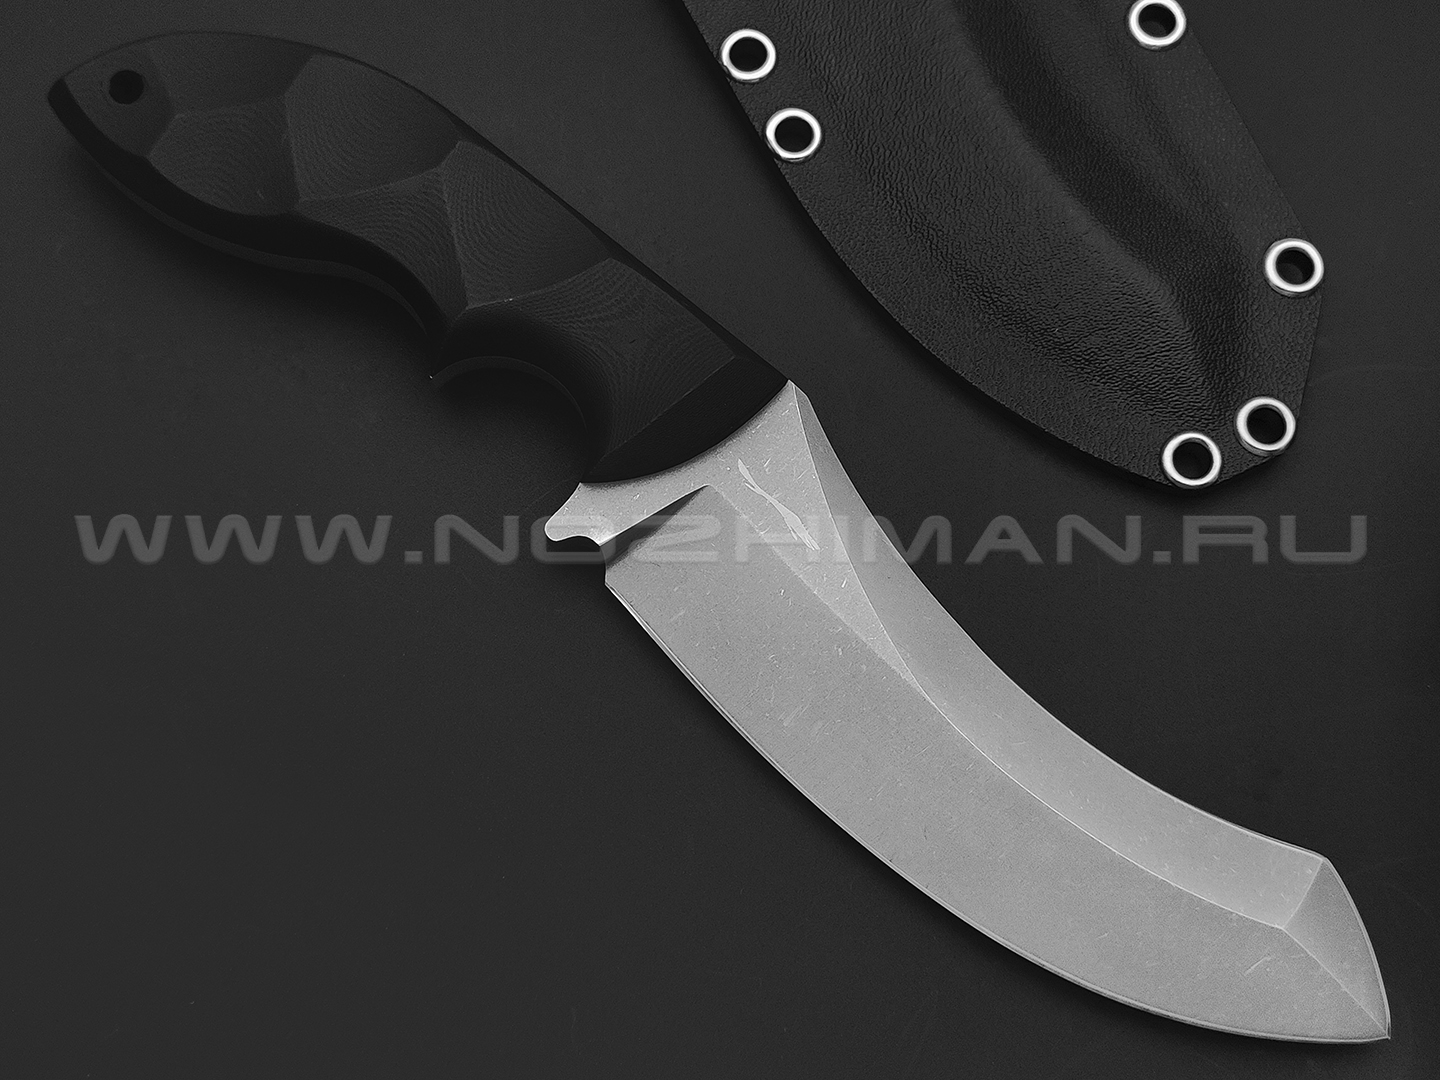 Волчий Век нож Кондрат 12 сталь 95х18 WA stonewash, рукоять G10 black